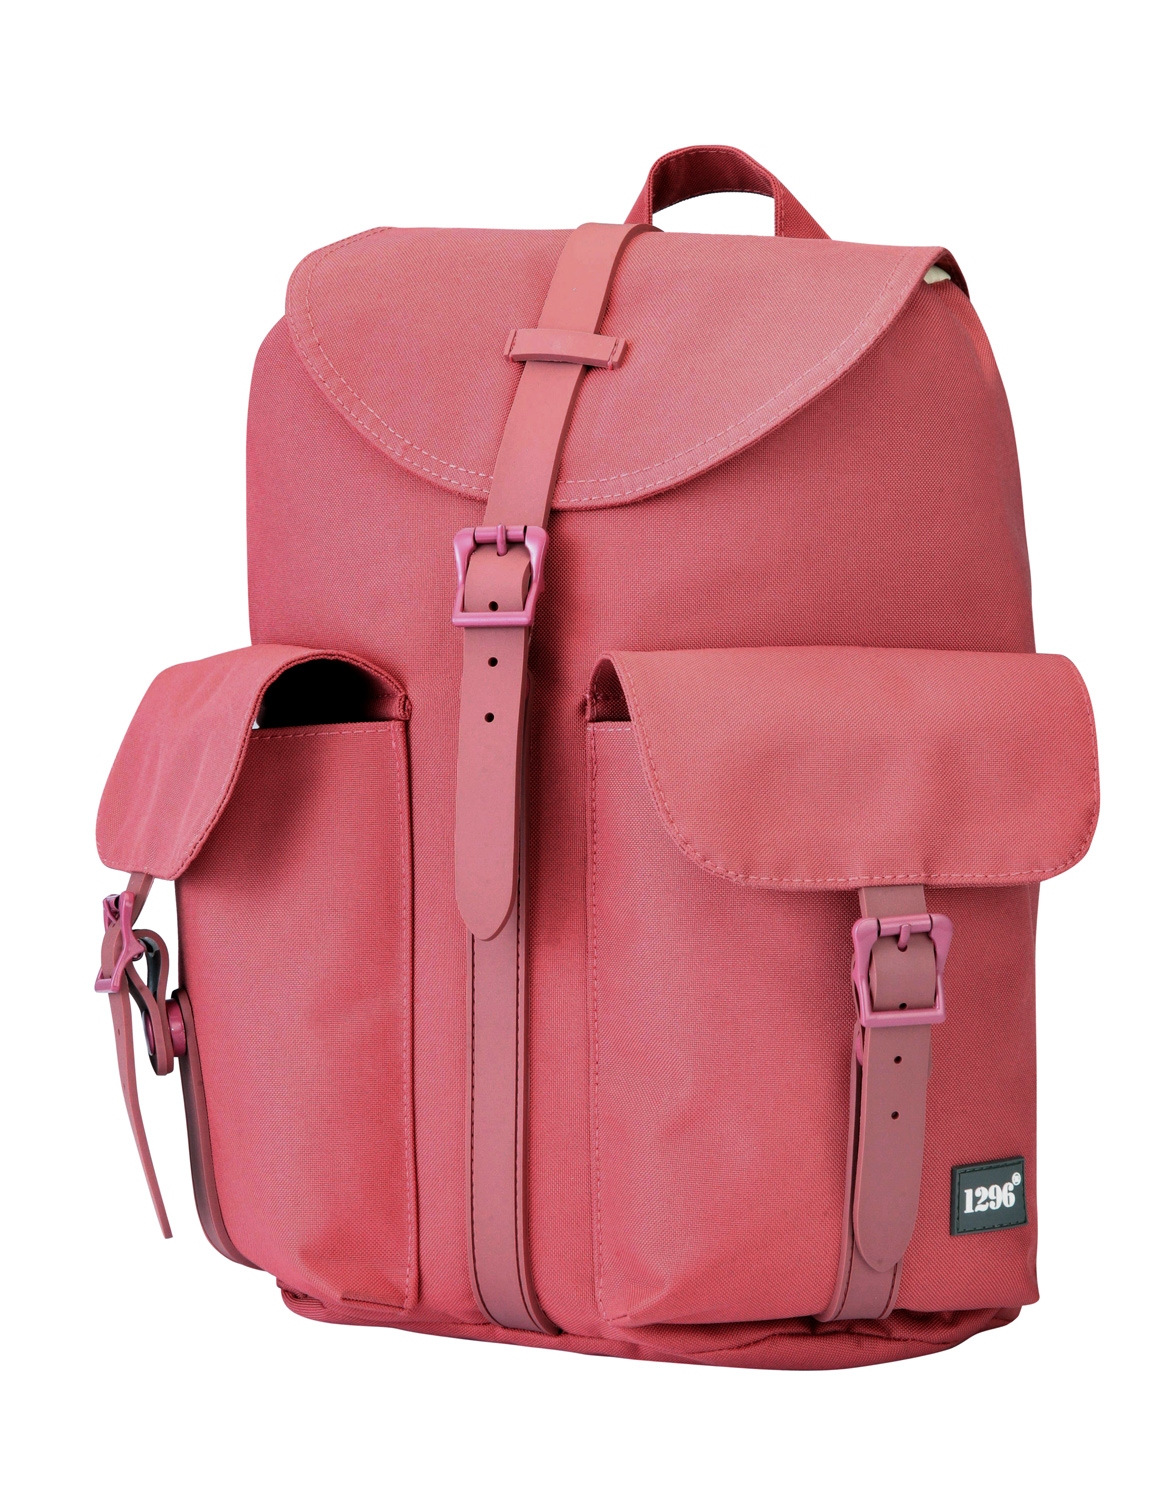 blnbag U5 - Handtaschen-Rucksack Tagesrucksack für Frauen mit Tabletfach, 23 cm, 12 L, Korallrot